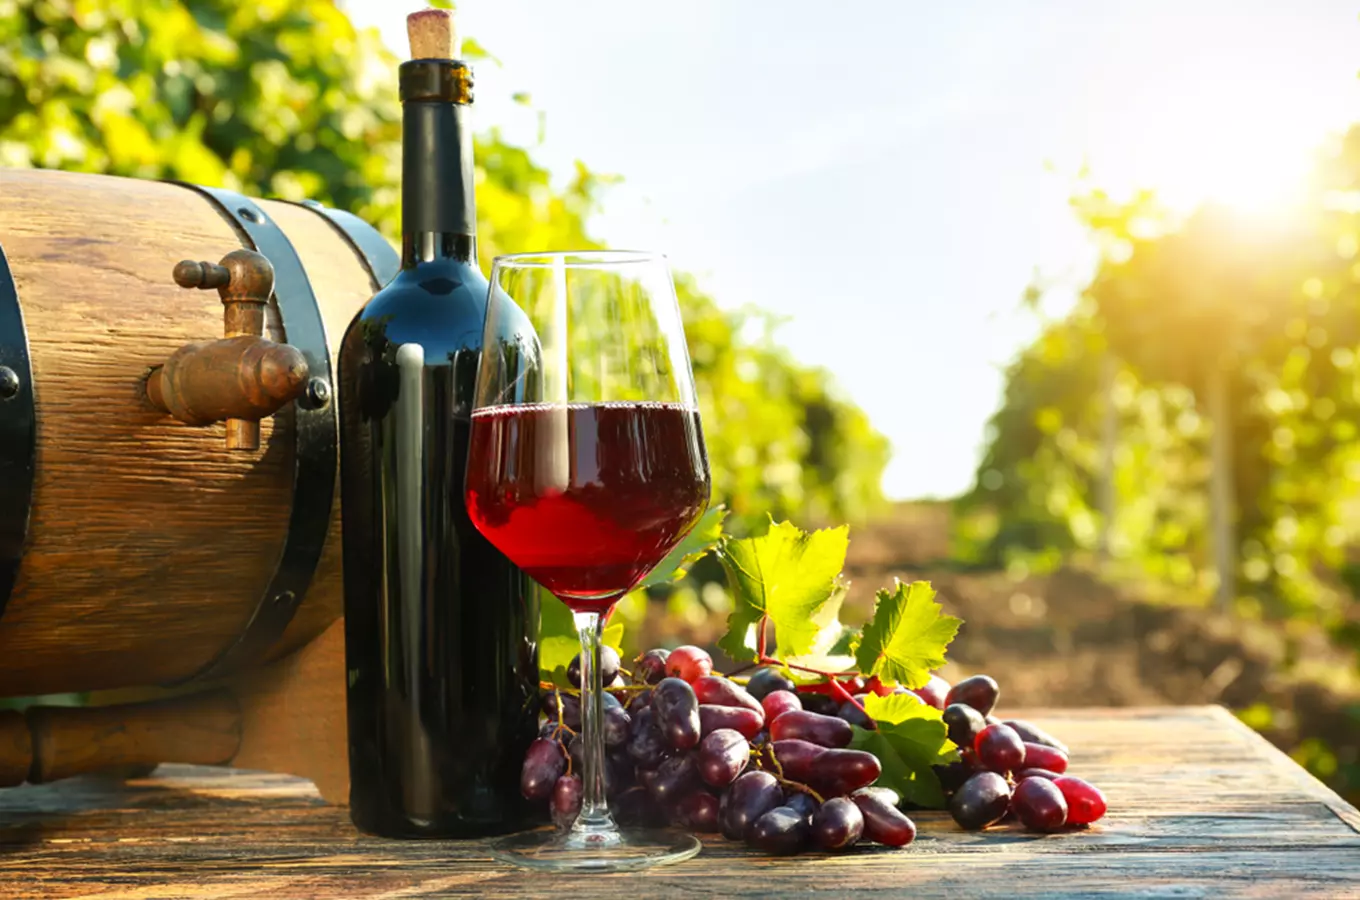 TOP vinařským cílem roku 2020 jsou Templářské sklepy